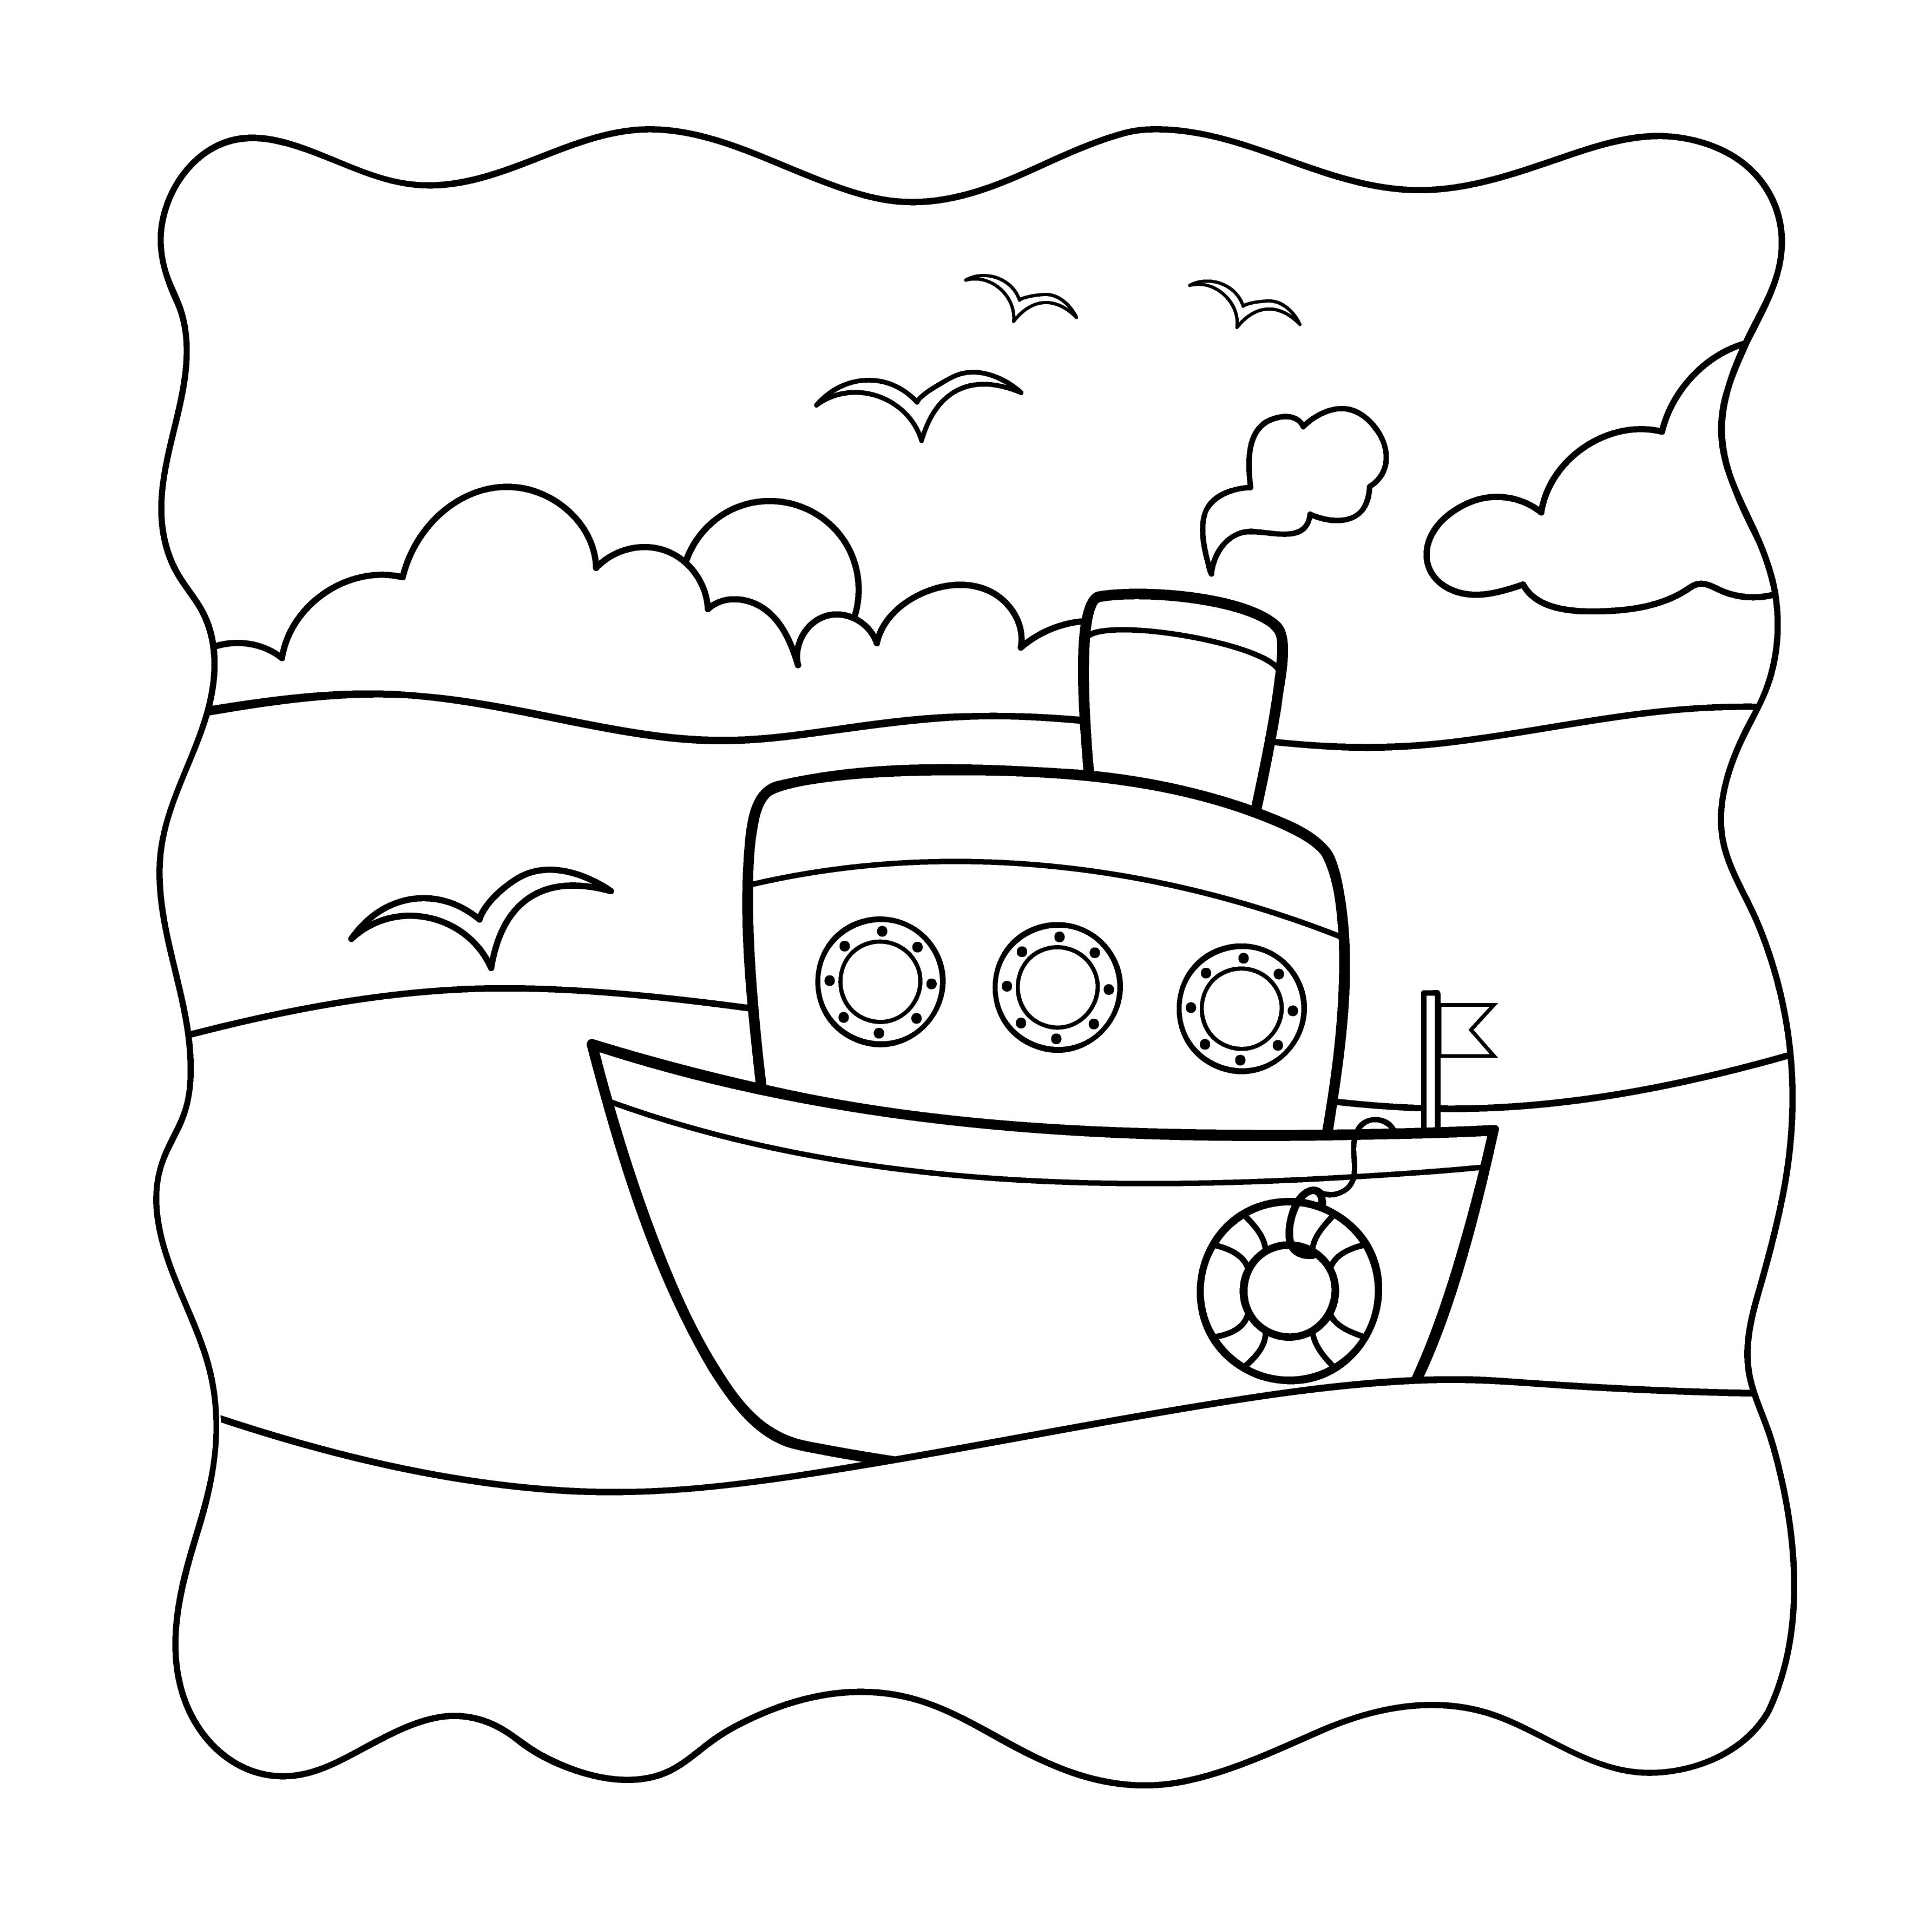 Раскраска игрушечный корабль в море с чайками формата А4 в высоком качестве